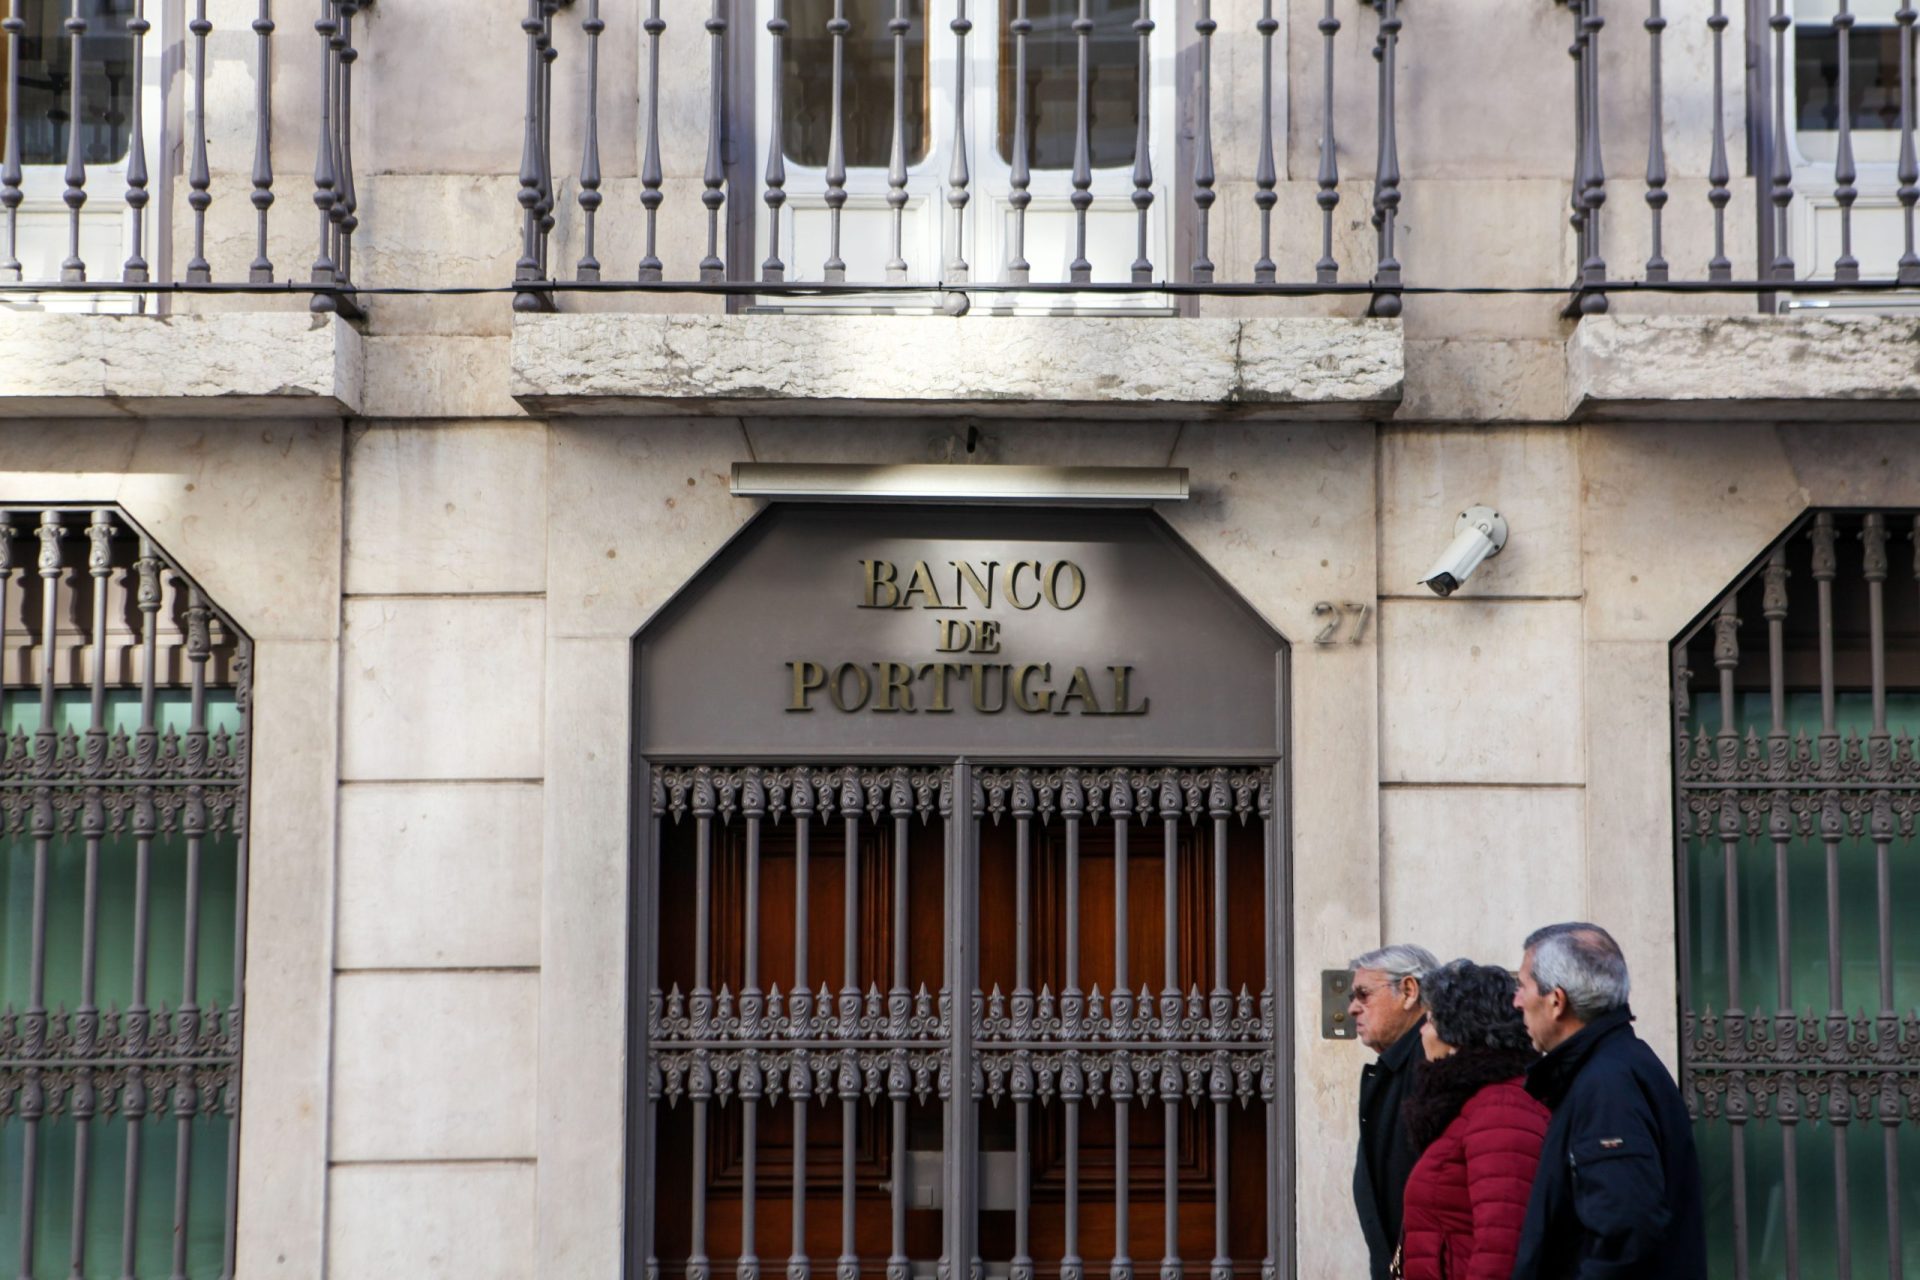 Banco de Portugal alerta para fraude telefónica